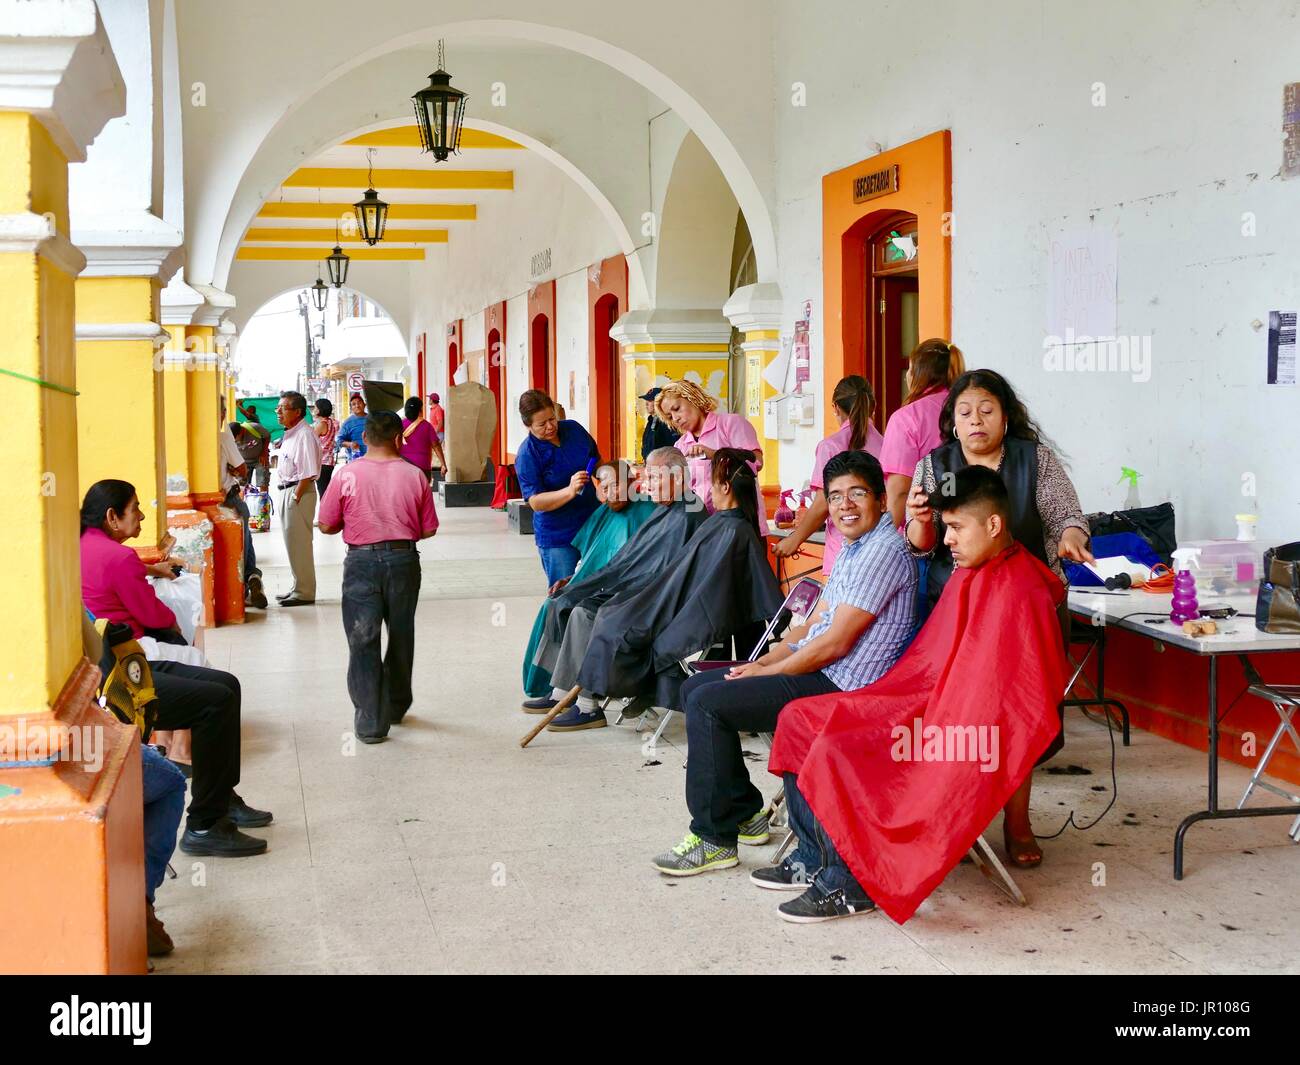 Les hommes de tous âges, une femme, l'obtention de coupes dans l'air extérieur zone à arcades. Young man smiling at camera. Coiffeurs à travailler. Zaachila, Oaxaca, Mexique. Banque D'Images